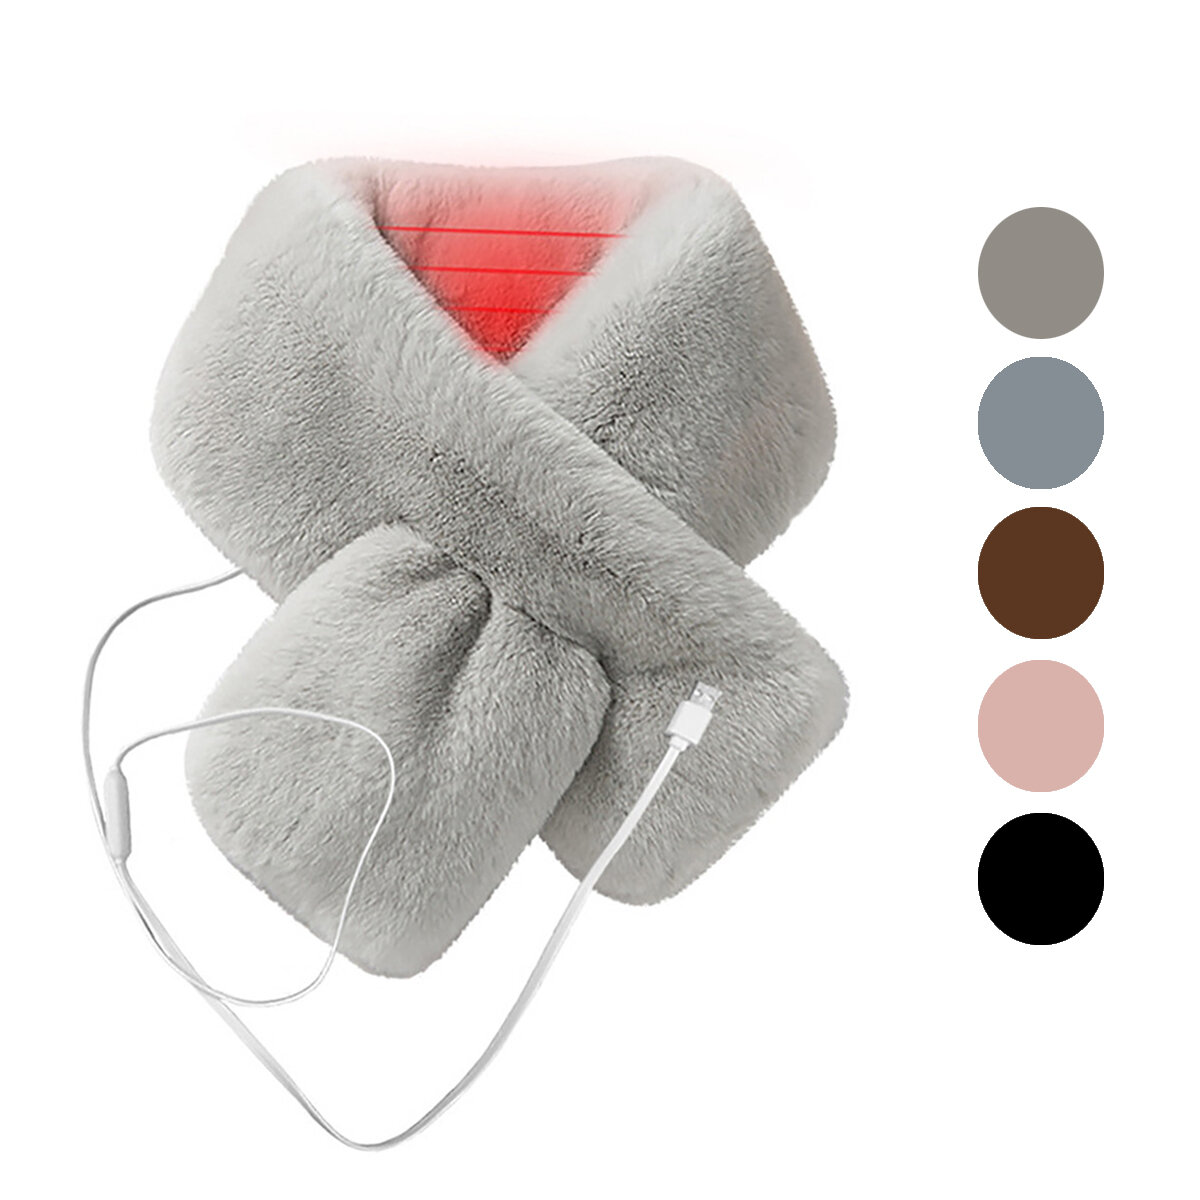 Ho una sciarpa elettrica riscaldata per donne in peluche spessa e pelliccia sintetica, che si può collegare a una porta USB e usare in inverno per scaldare il collo.